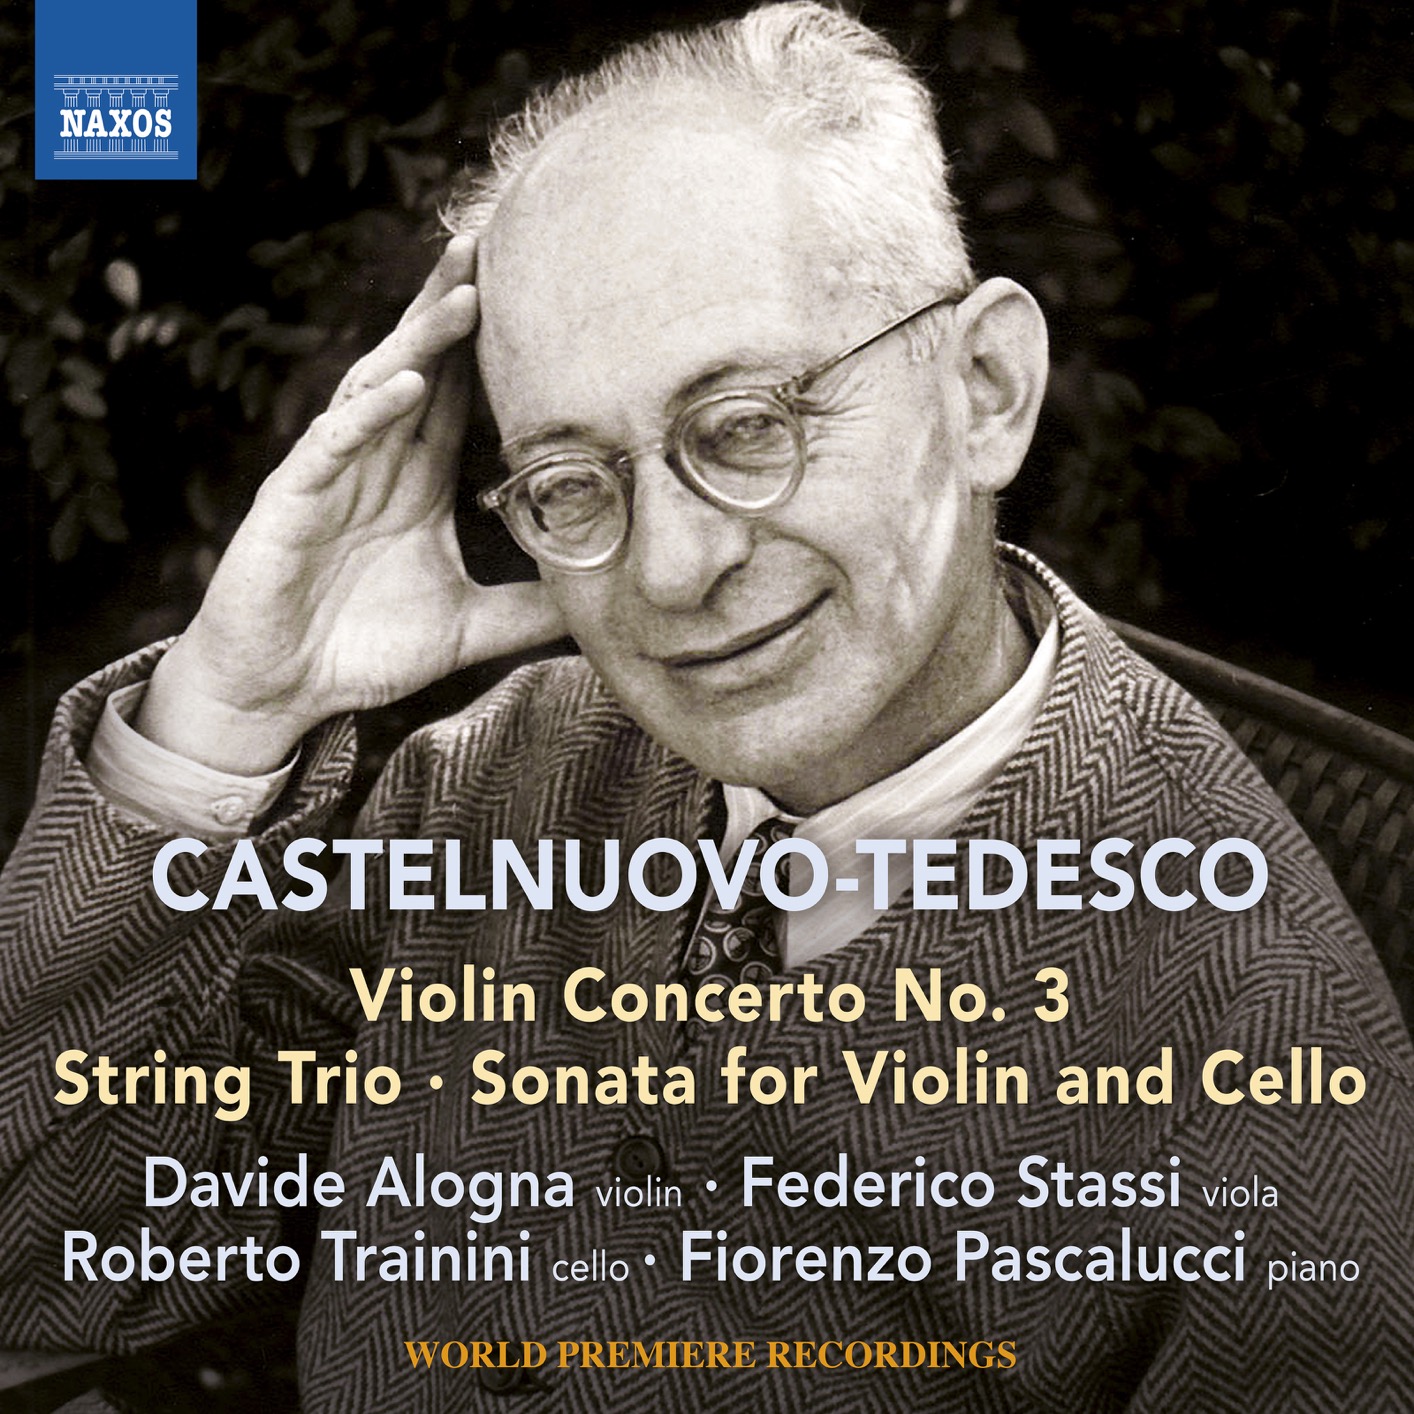 Davide Alogna - Castelnuovo-Tedesco: Violin Concerto No. 3 (2018) [FLAC 24bit/96kHz]